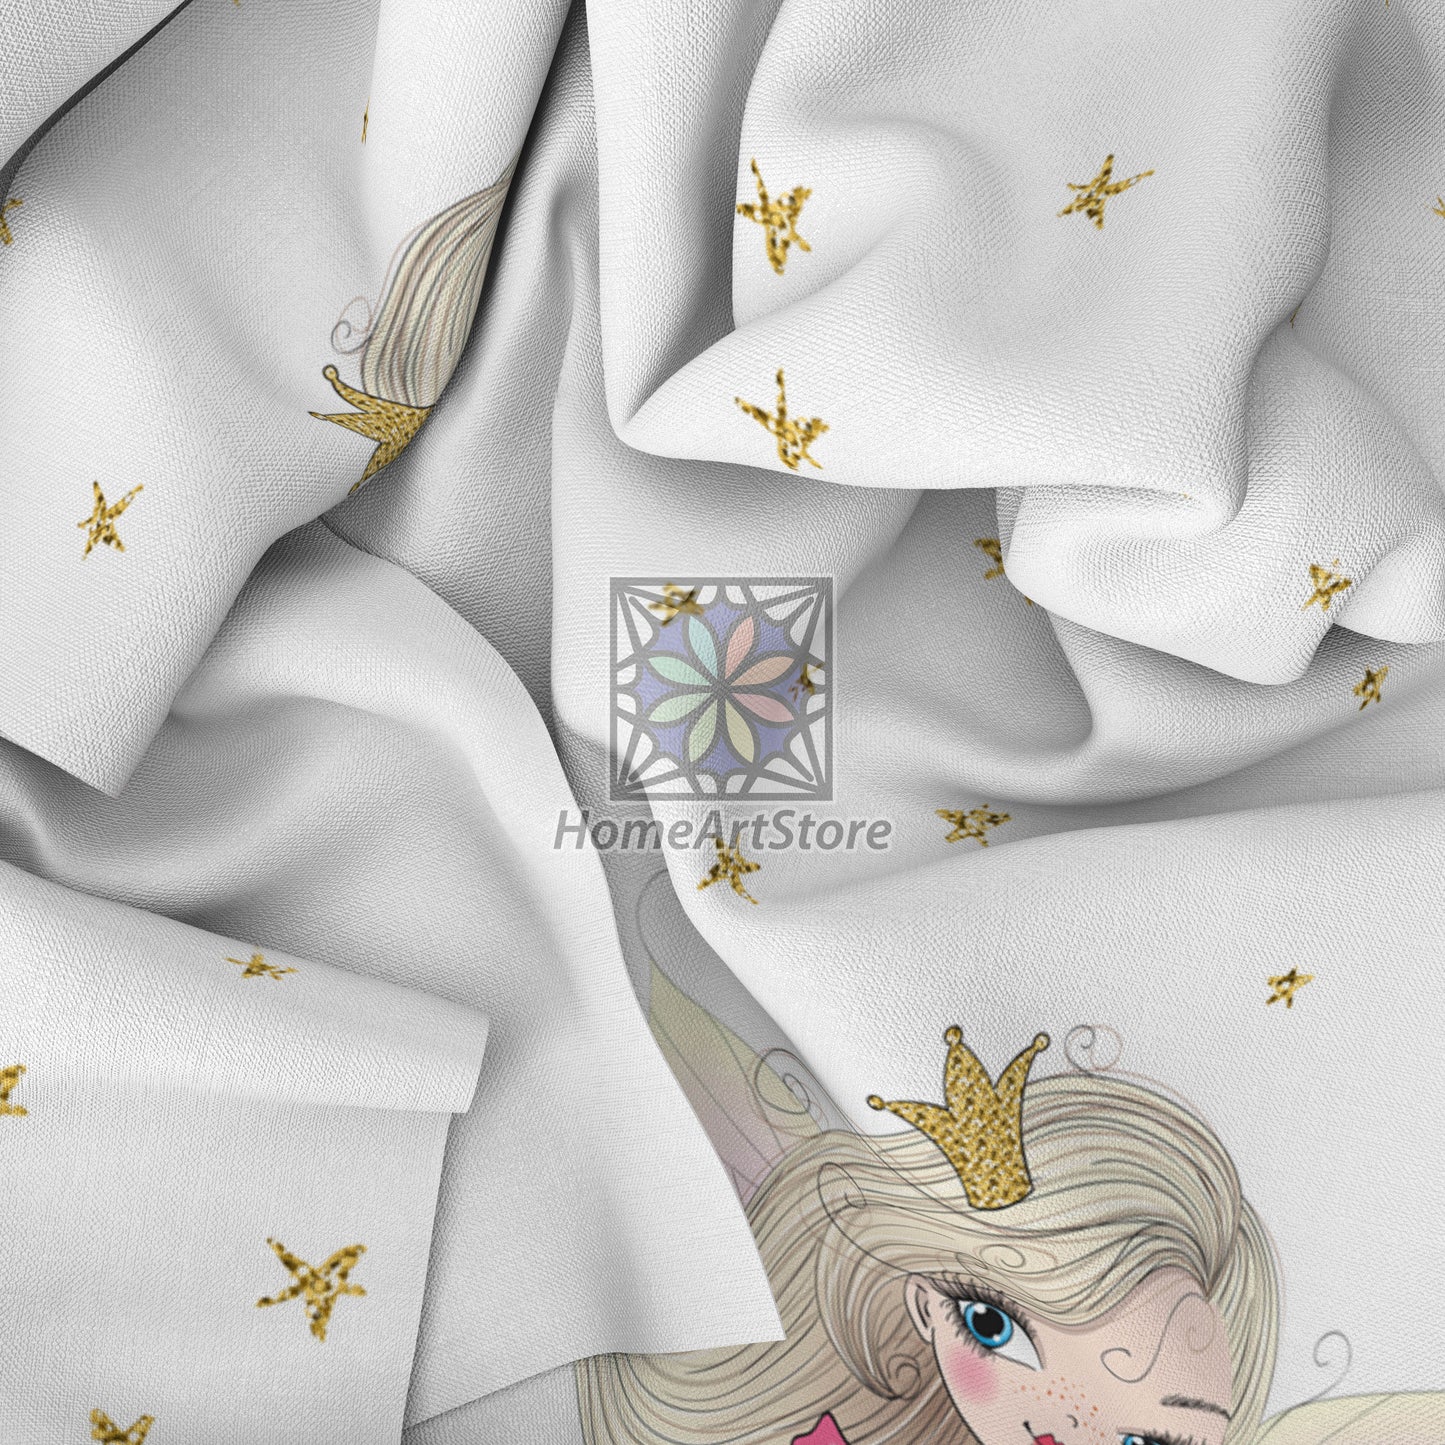 Fairy Princess Themed Curtain, Baby Girl Room Curtain, Star Printed Curtain, Beautiful Girl Curtain, Baby Room Decor